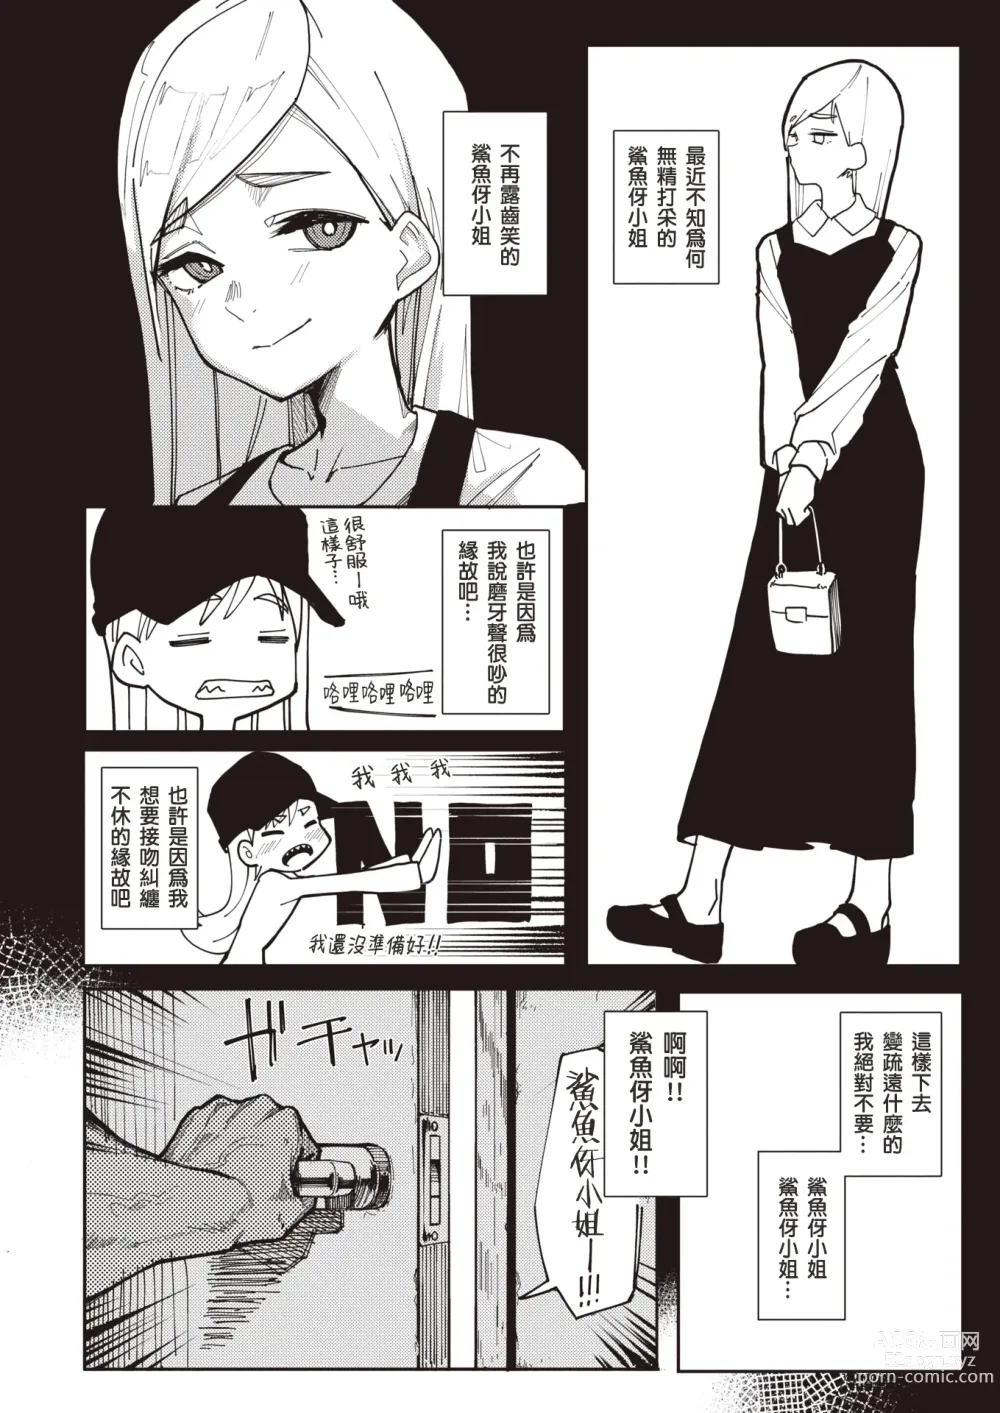 Page 5 of manga 牙齒凹凸不平的鯊魚伢小姐